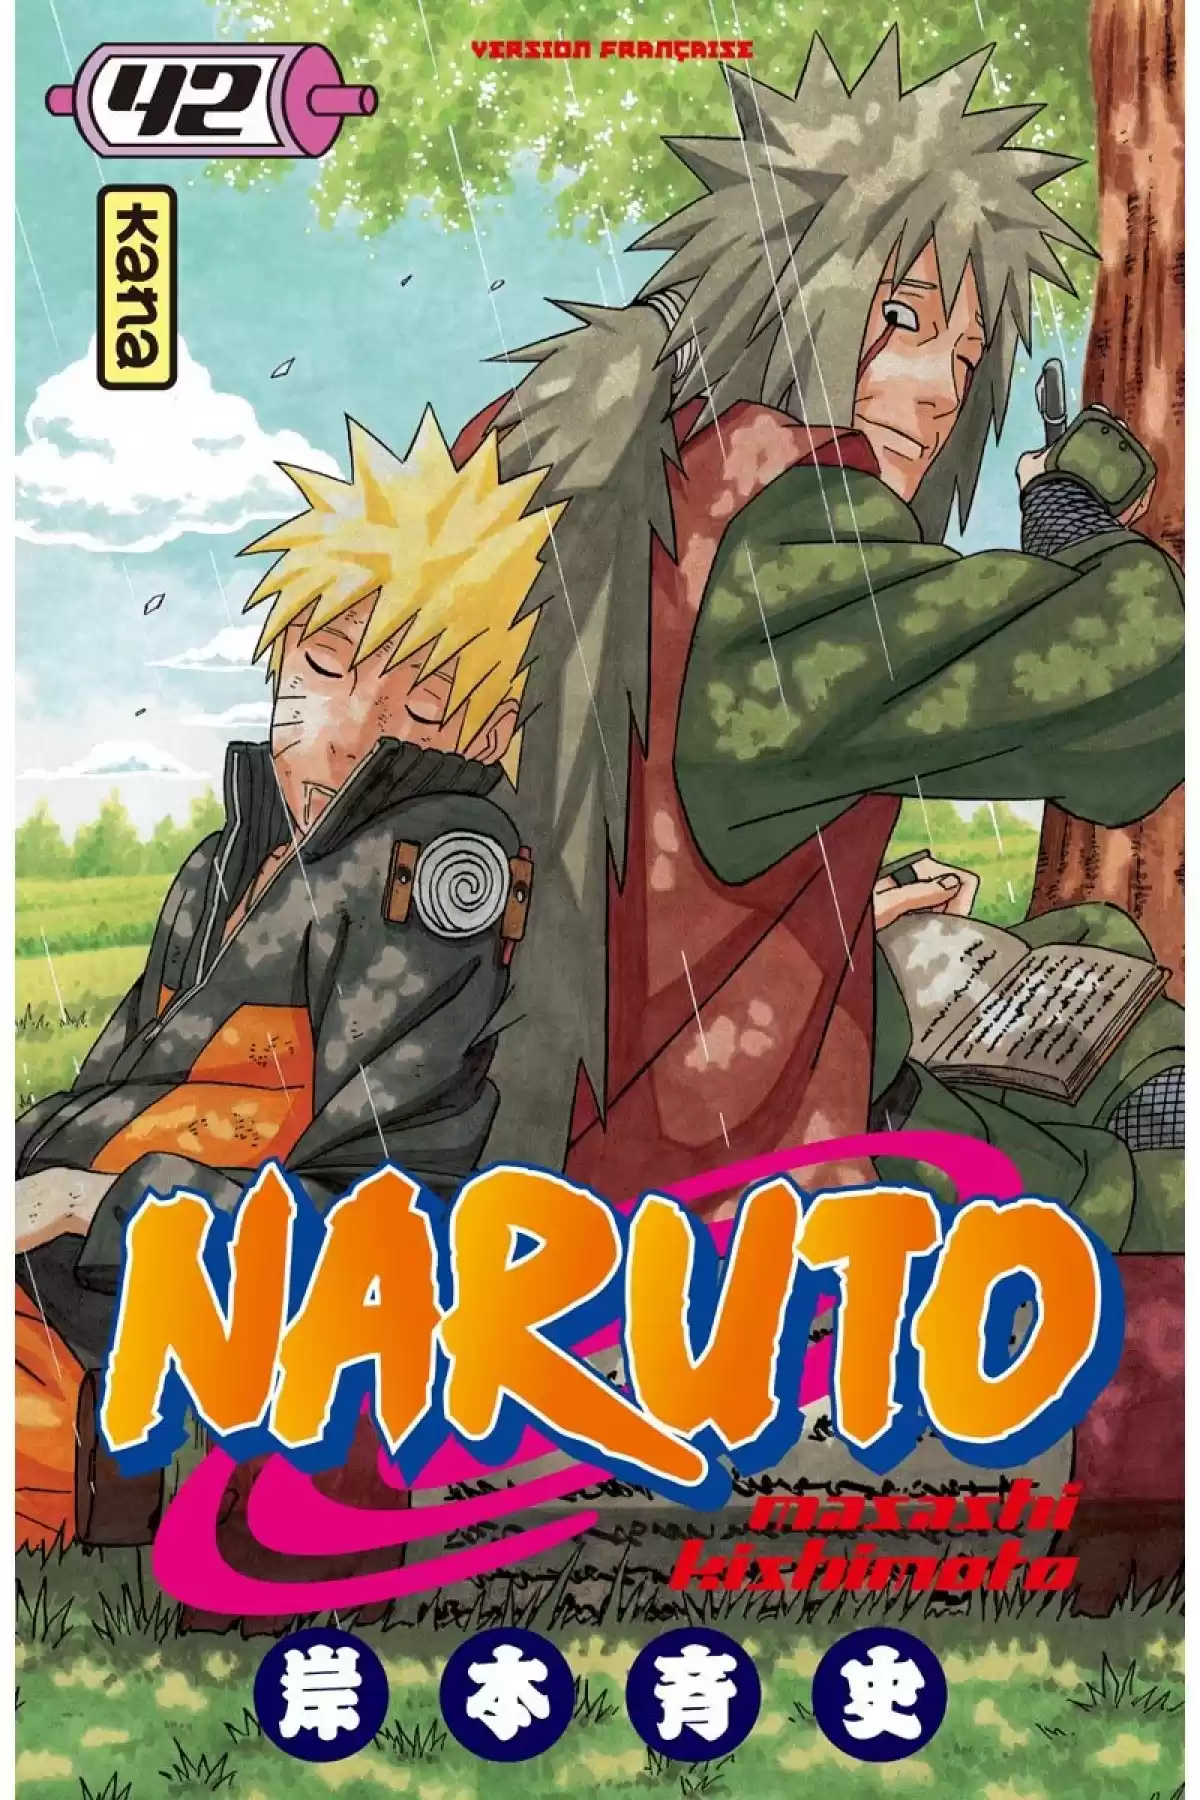 Naruto Volume 42 page 1